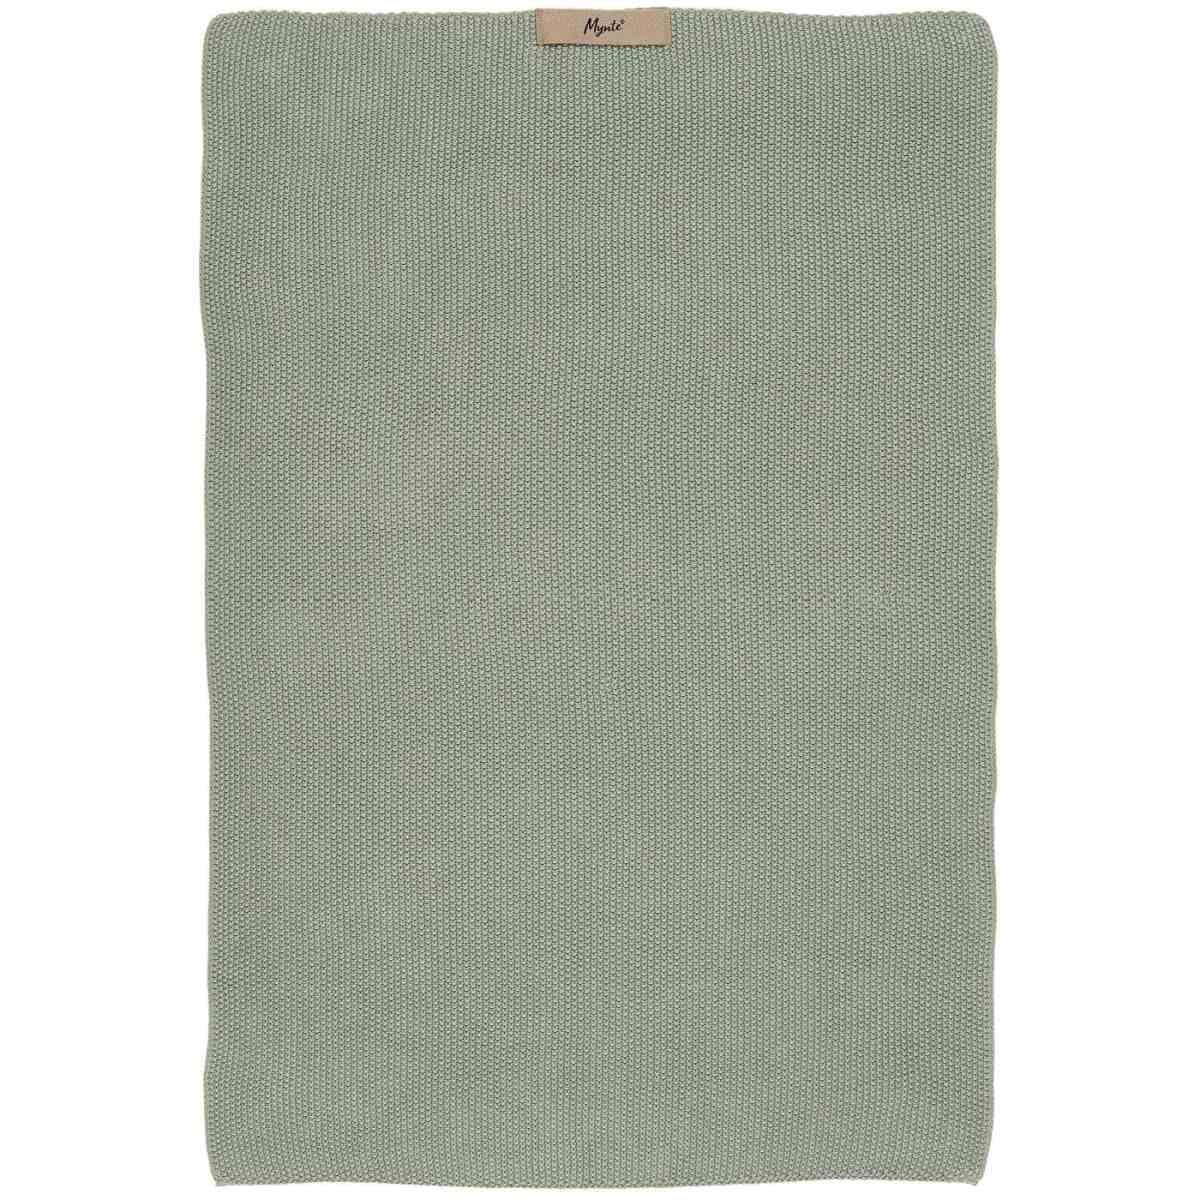 Ib Laursen Handtuch Handtuch Mynte gestrickt 40x60 cm Küchenhandtuch Staubig Grün